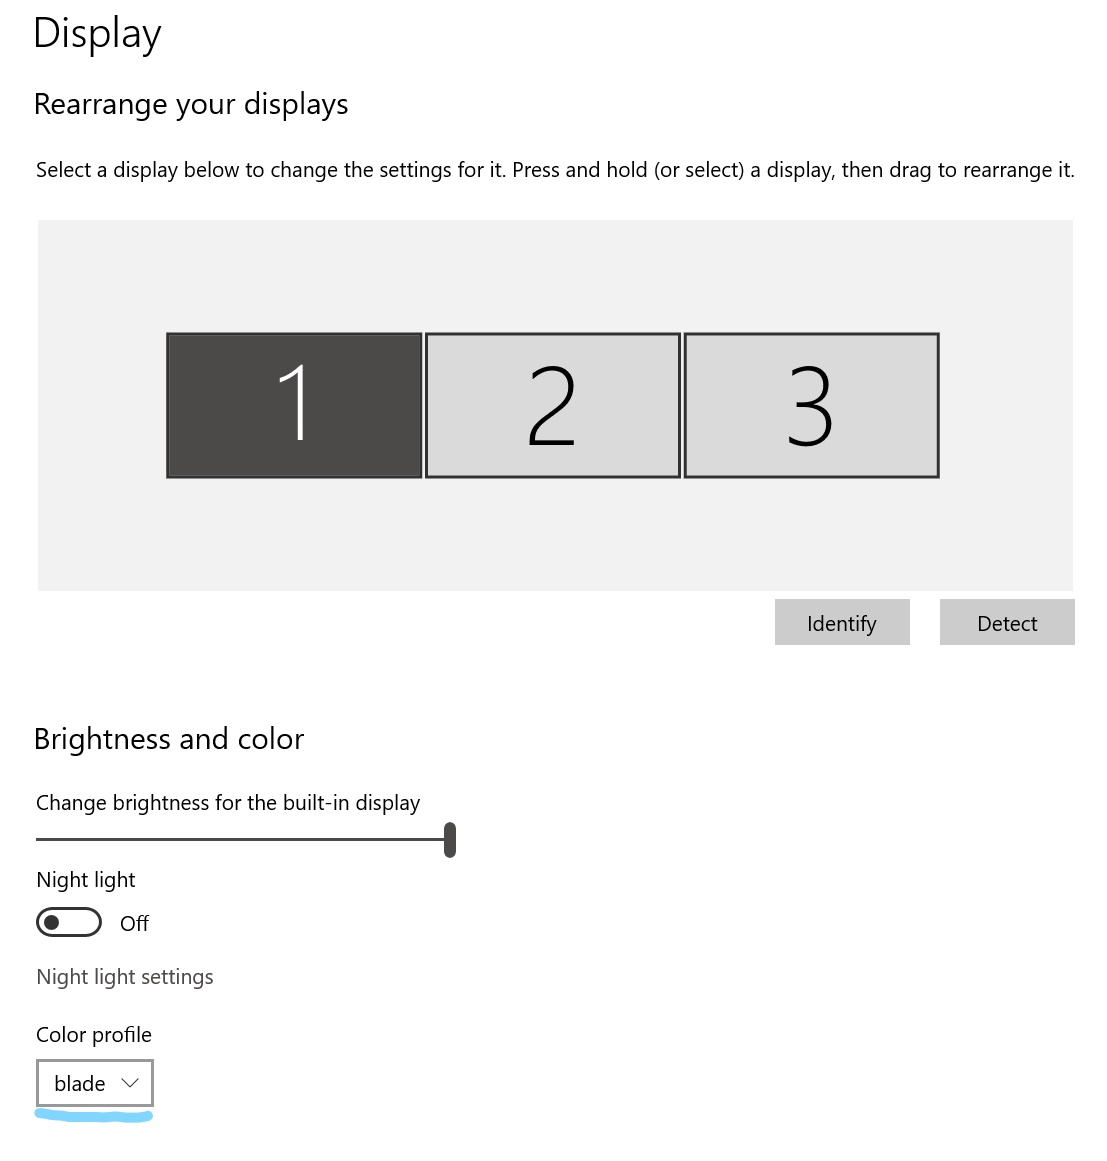 Color Profiles with multiple monitors a899c12d-6d86-47de-a025-b2d0c21f5c1a?upload=true.jpg